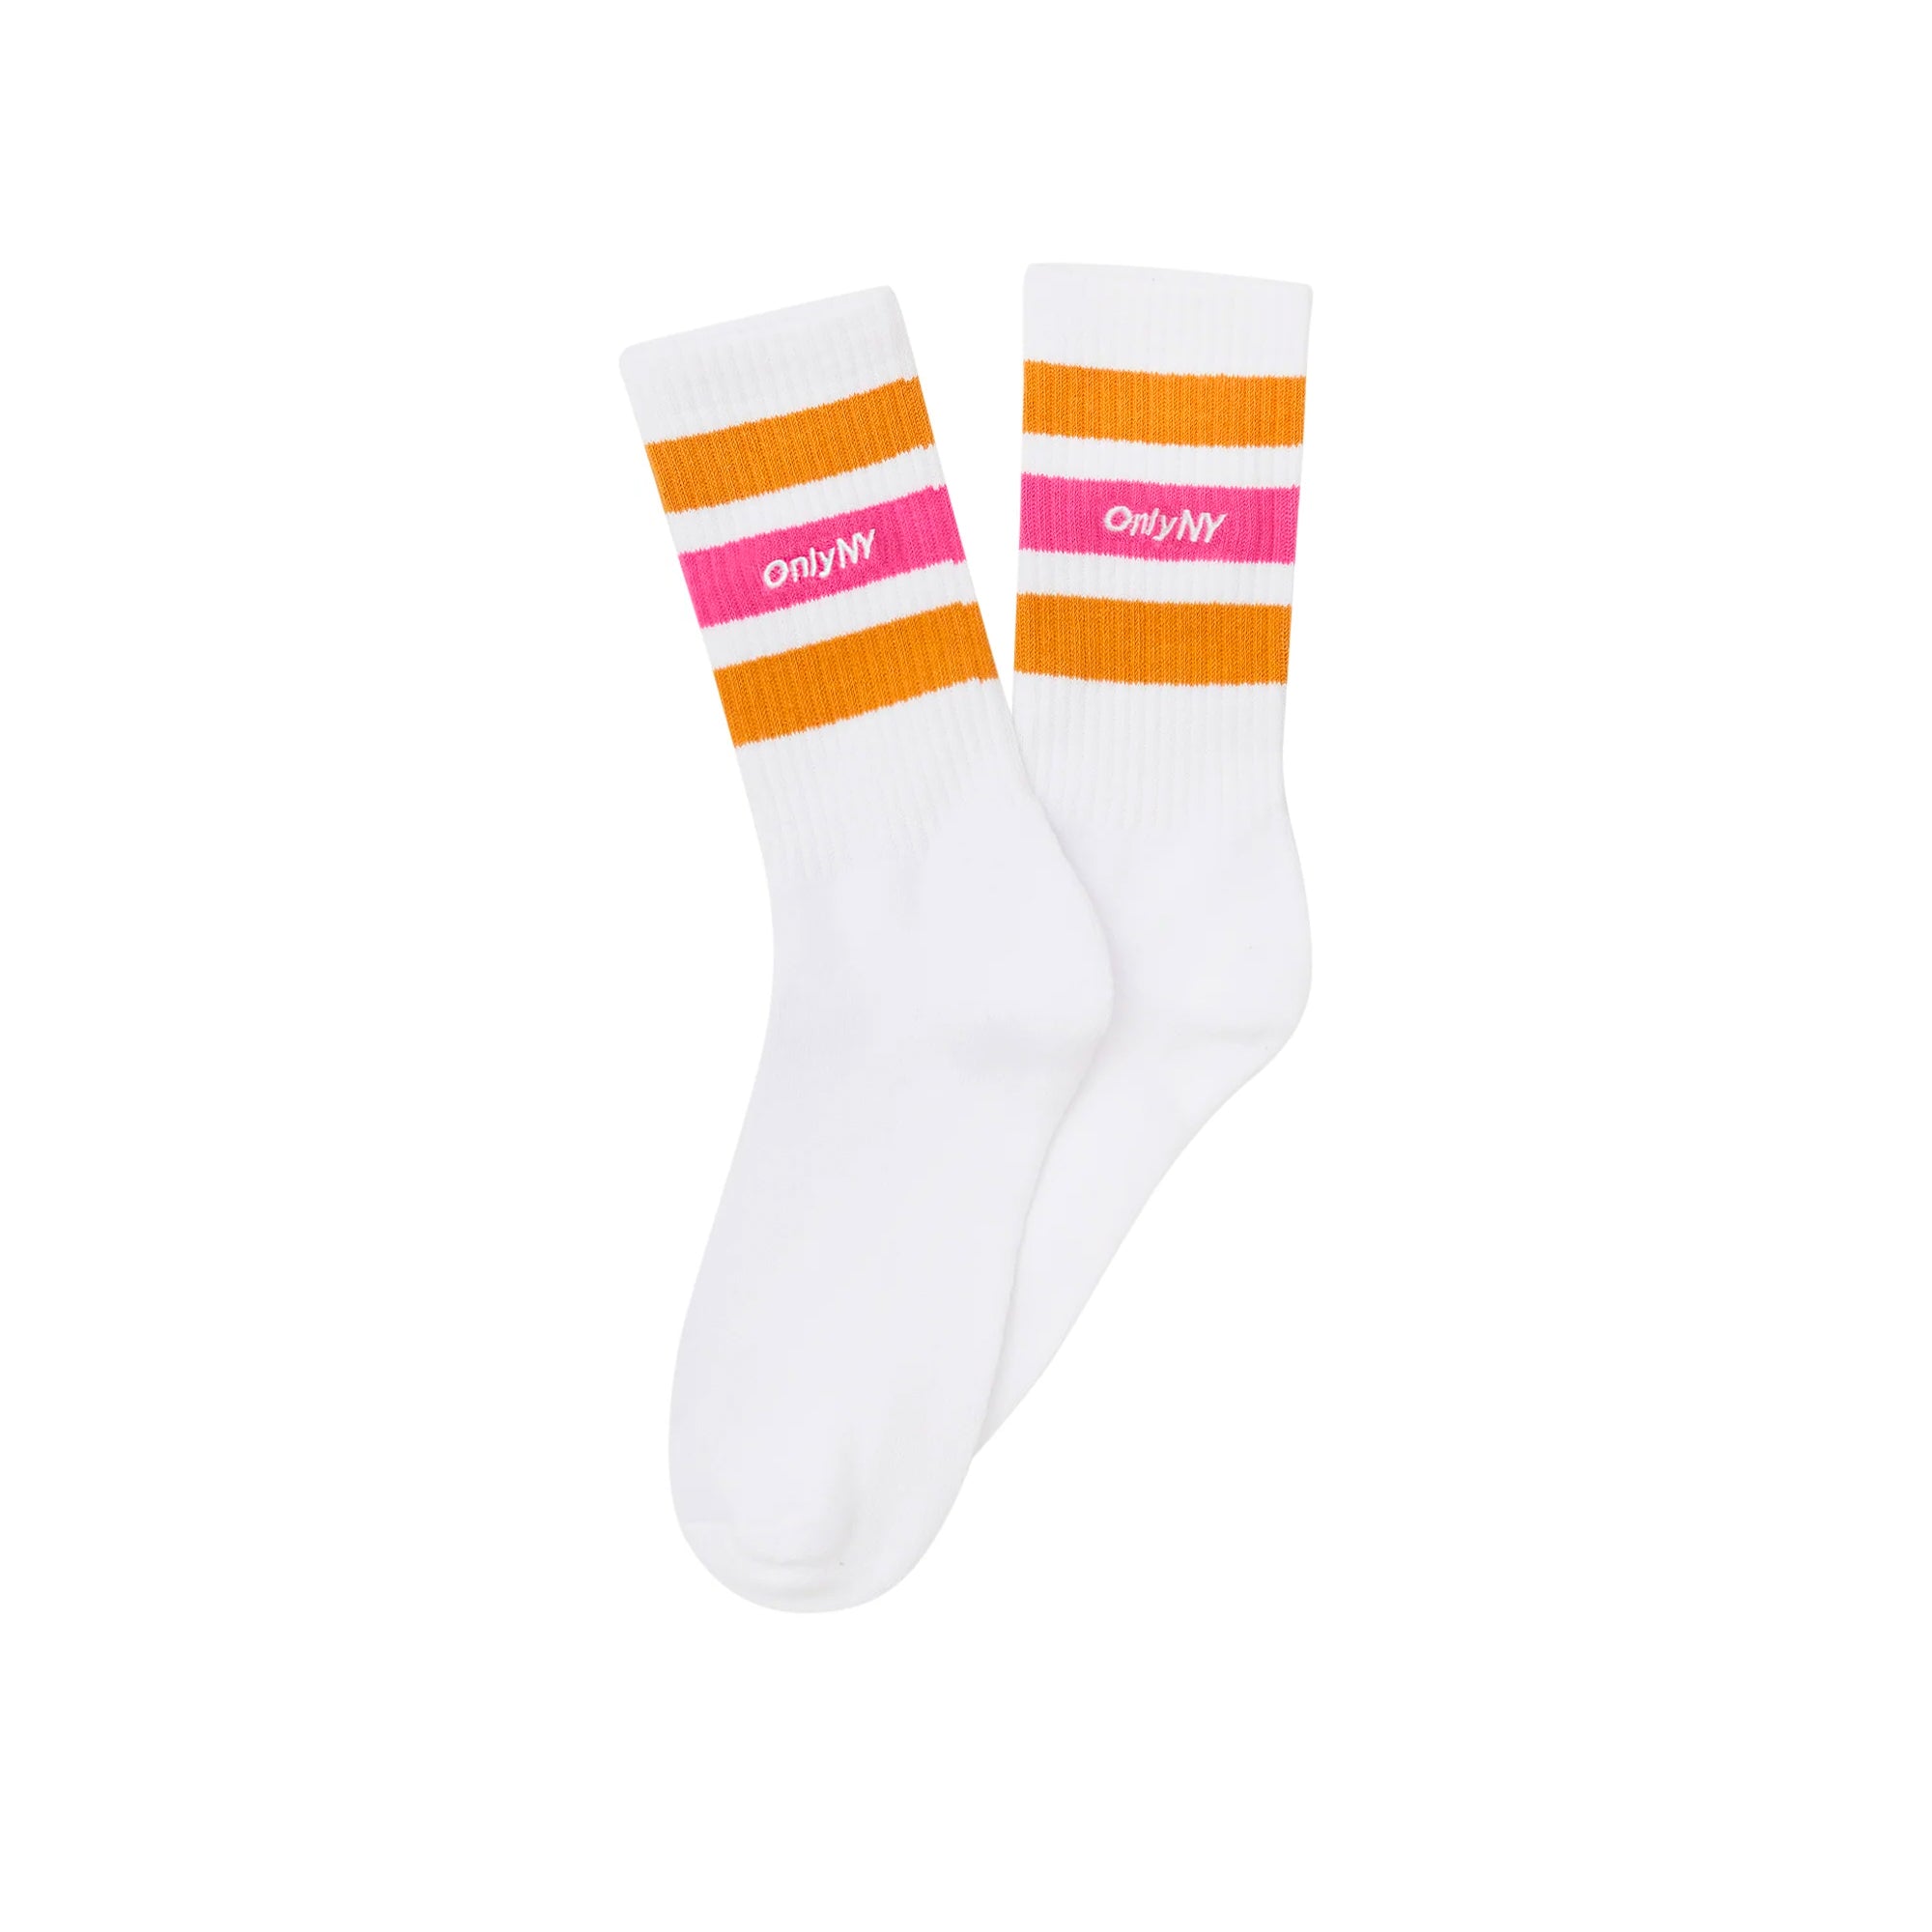 Varsity Stripe Socks – Only NY